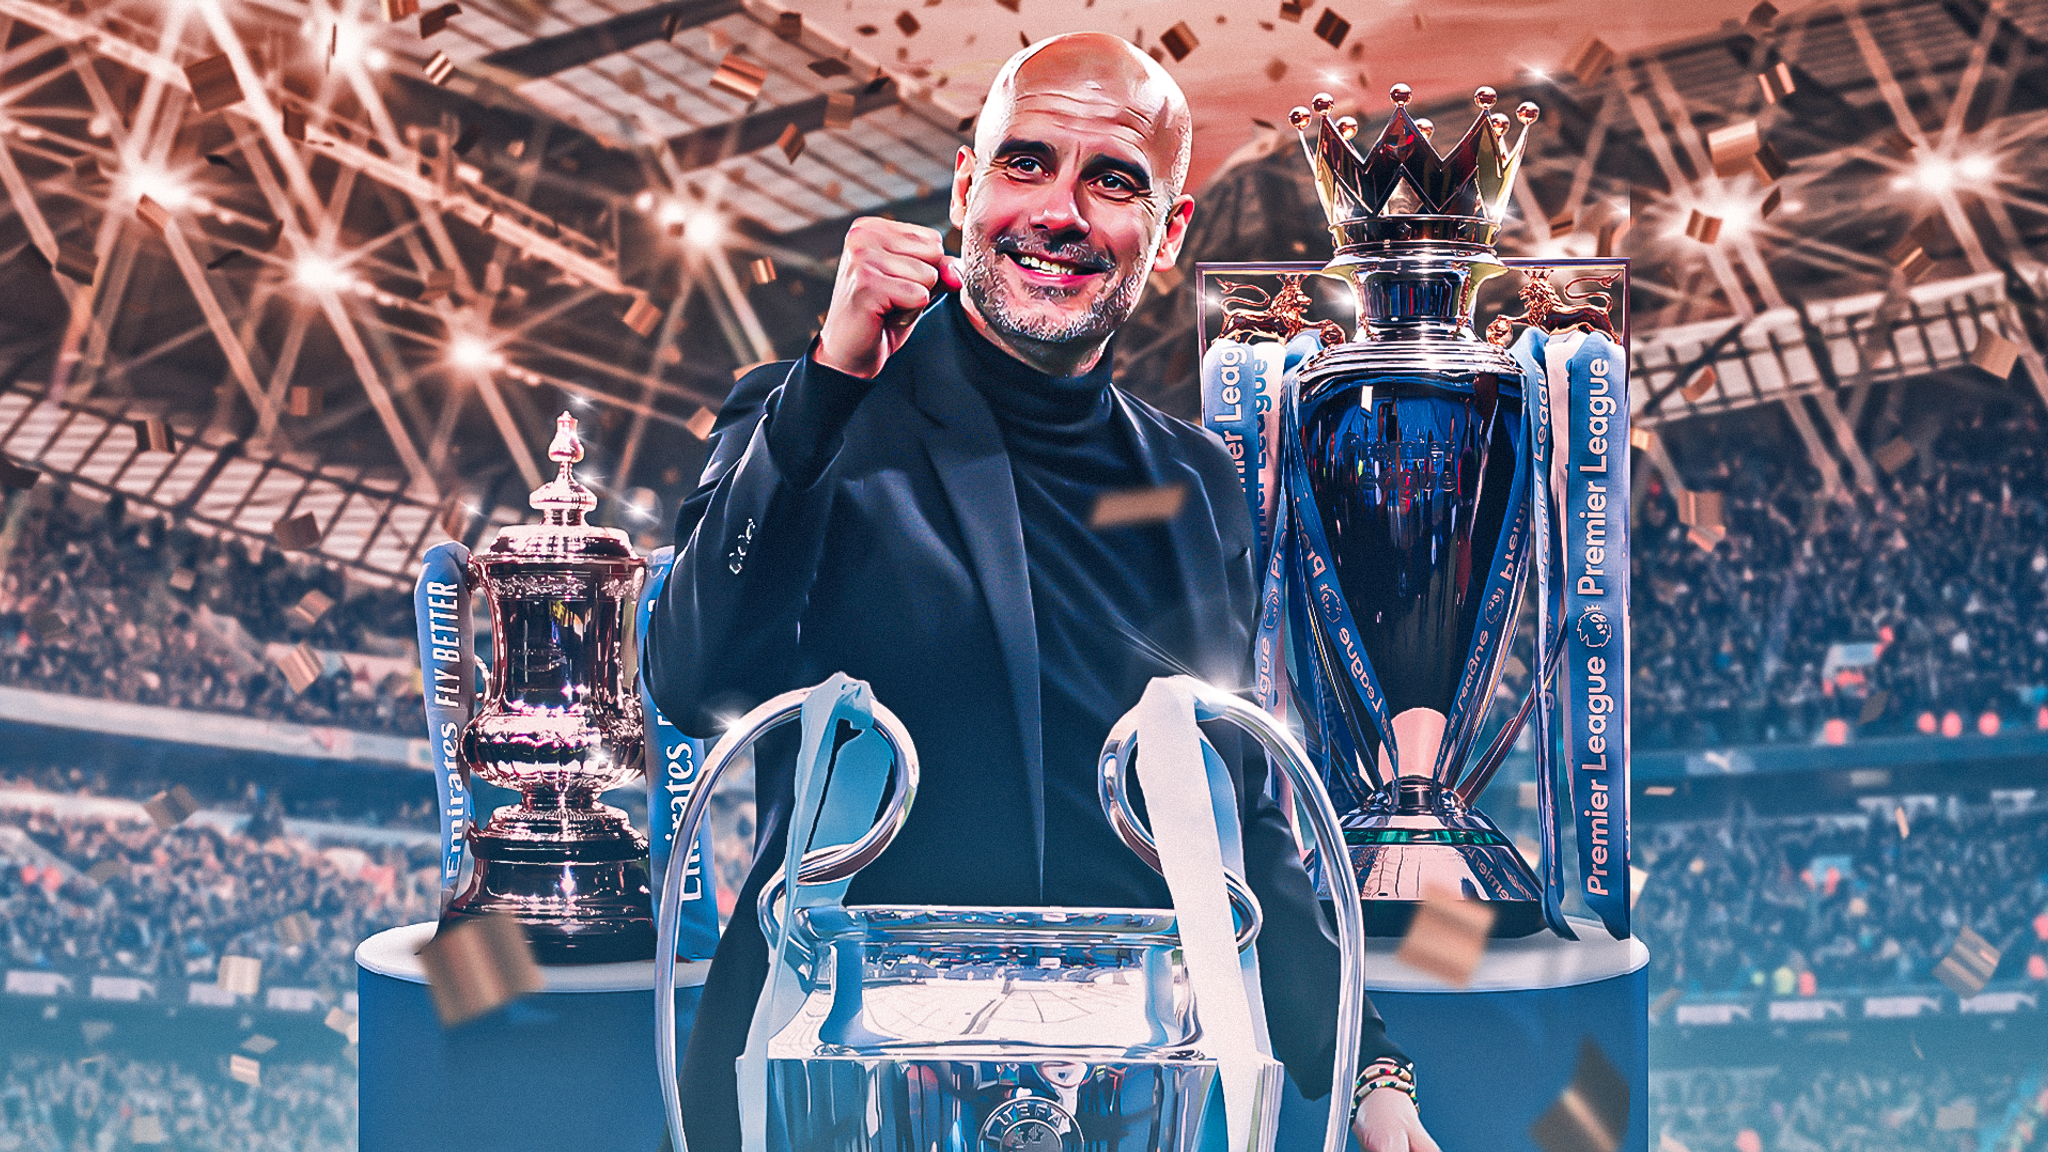 Faça o download do novo jogo Manchester City FC Fantasy Manager